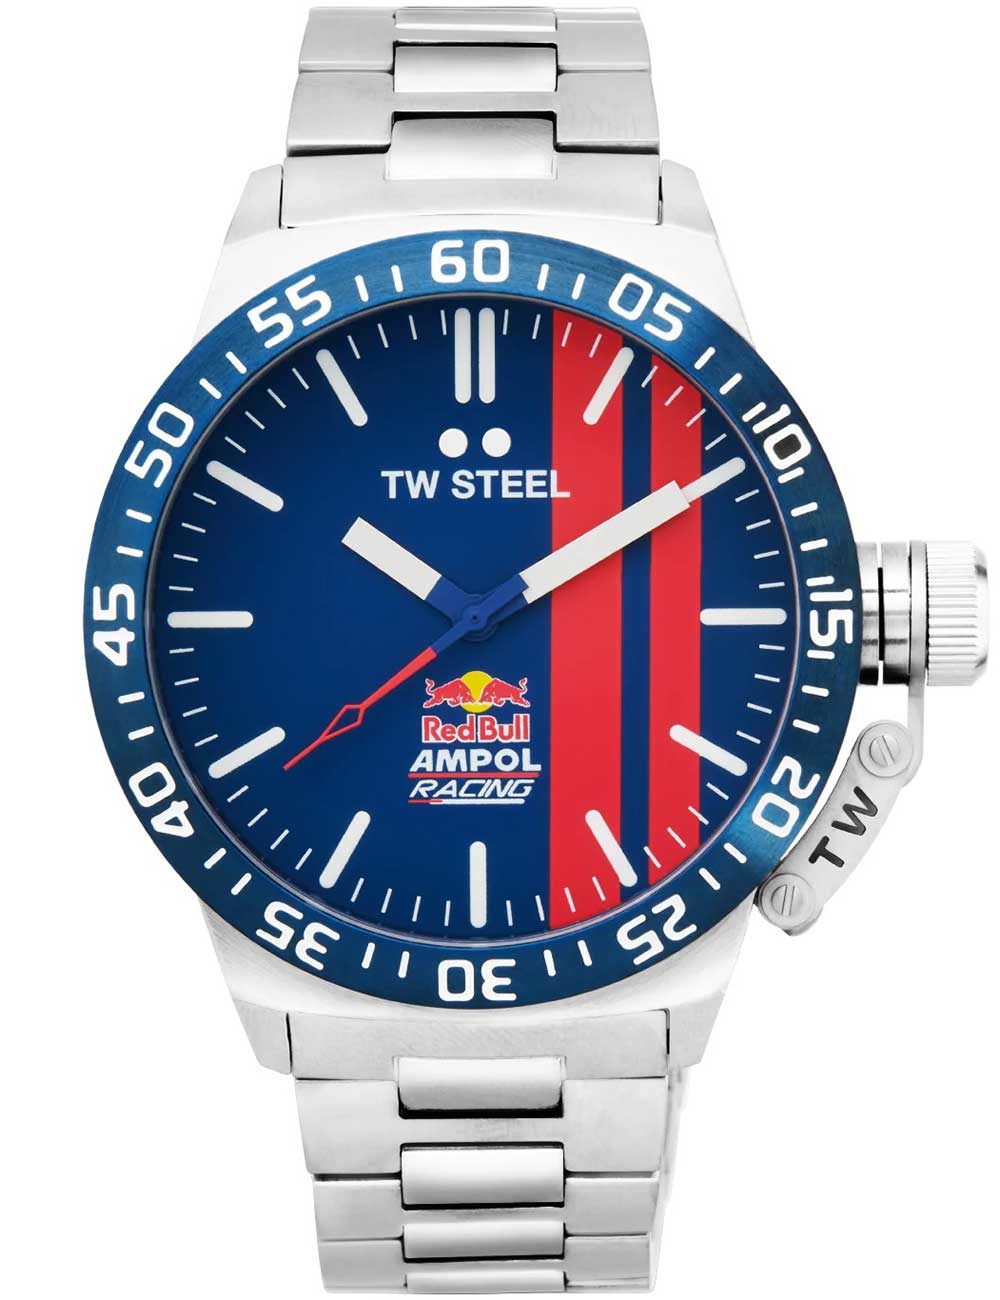 Pánské hodinky TW-Steel CS111 Red Bull Ampol Racing